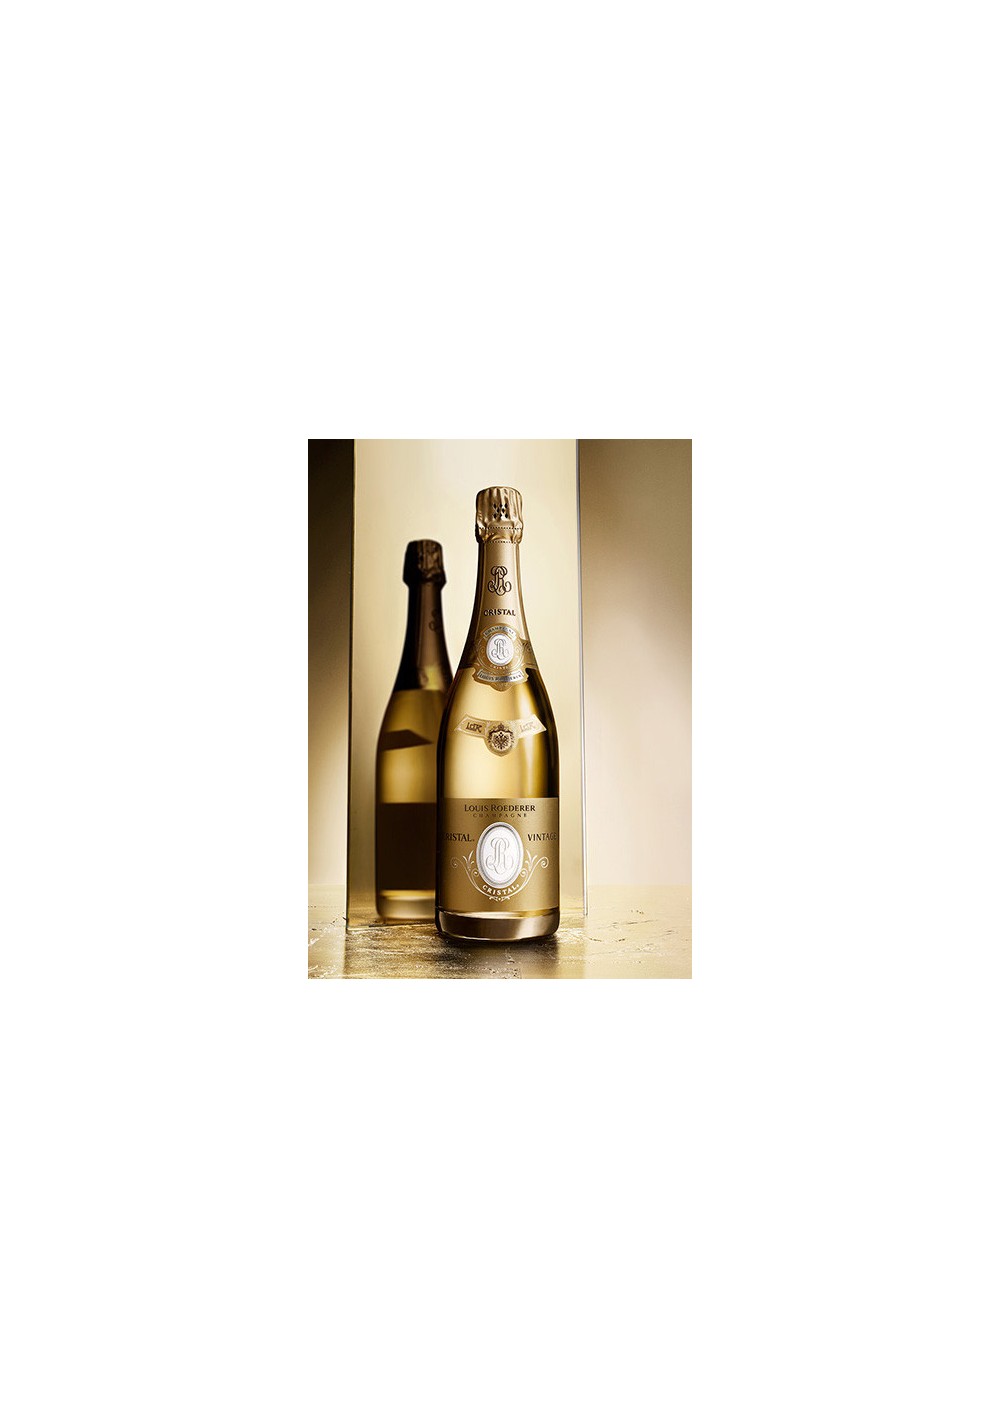 Champagne Cristal Roederer 2006 3 litres